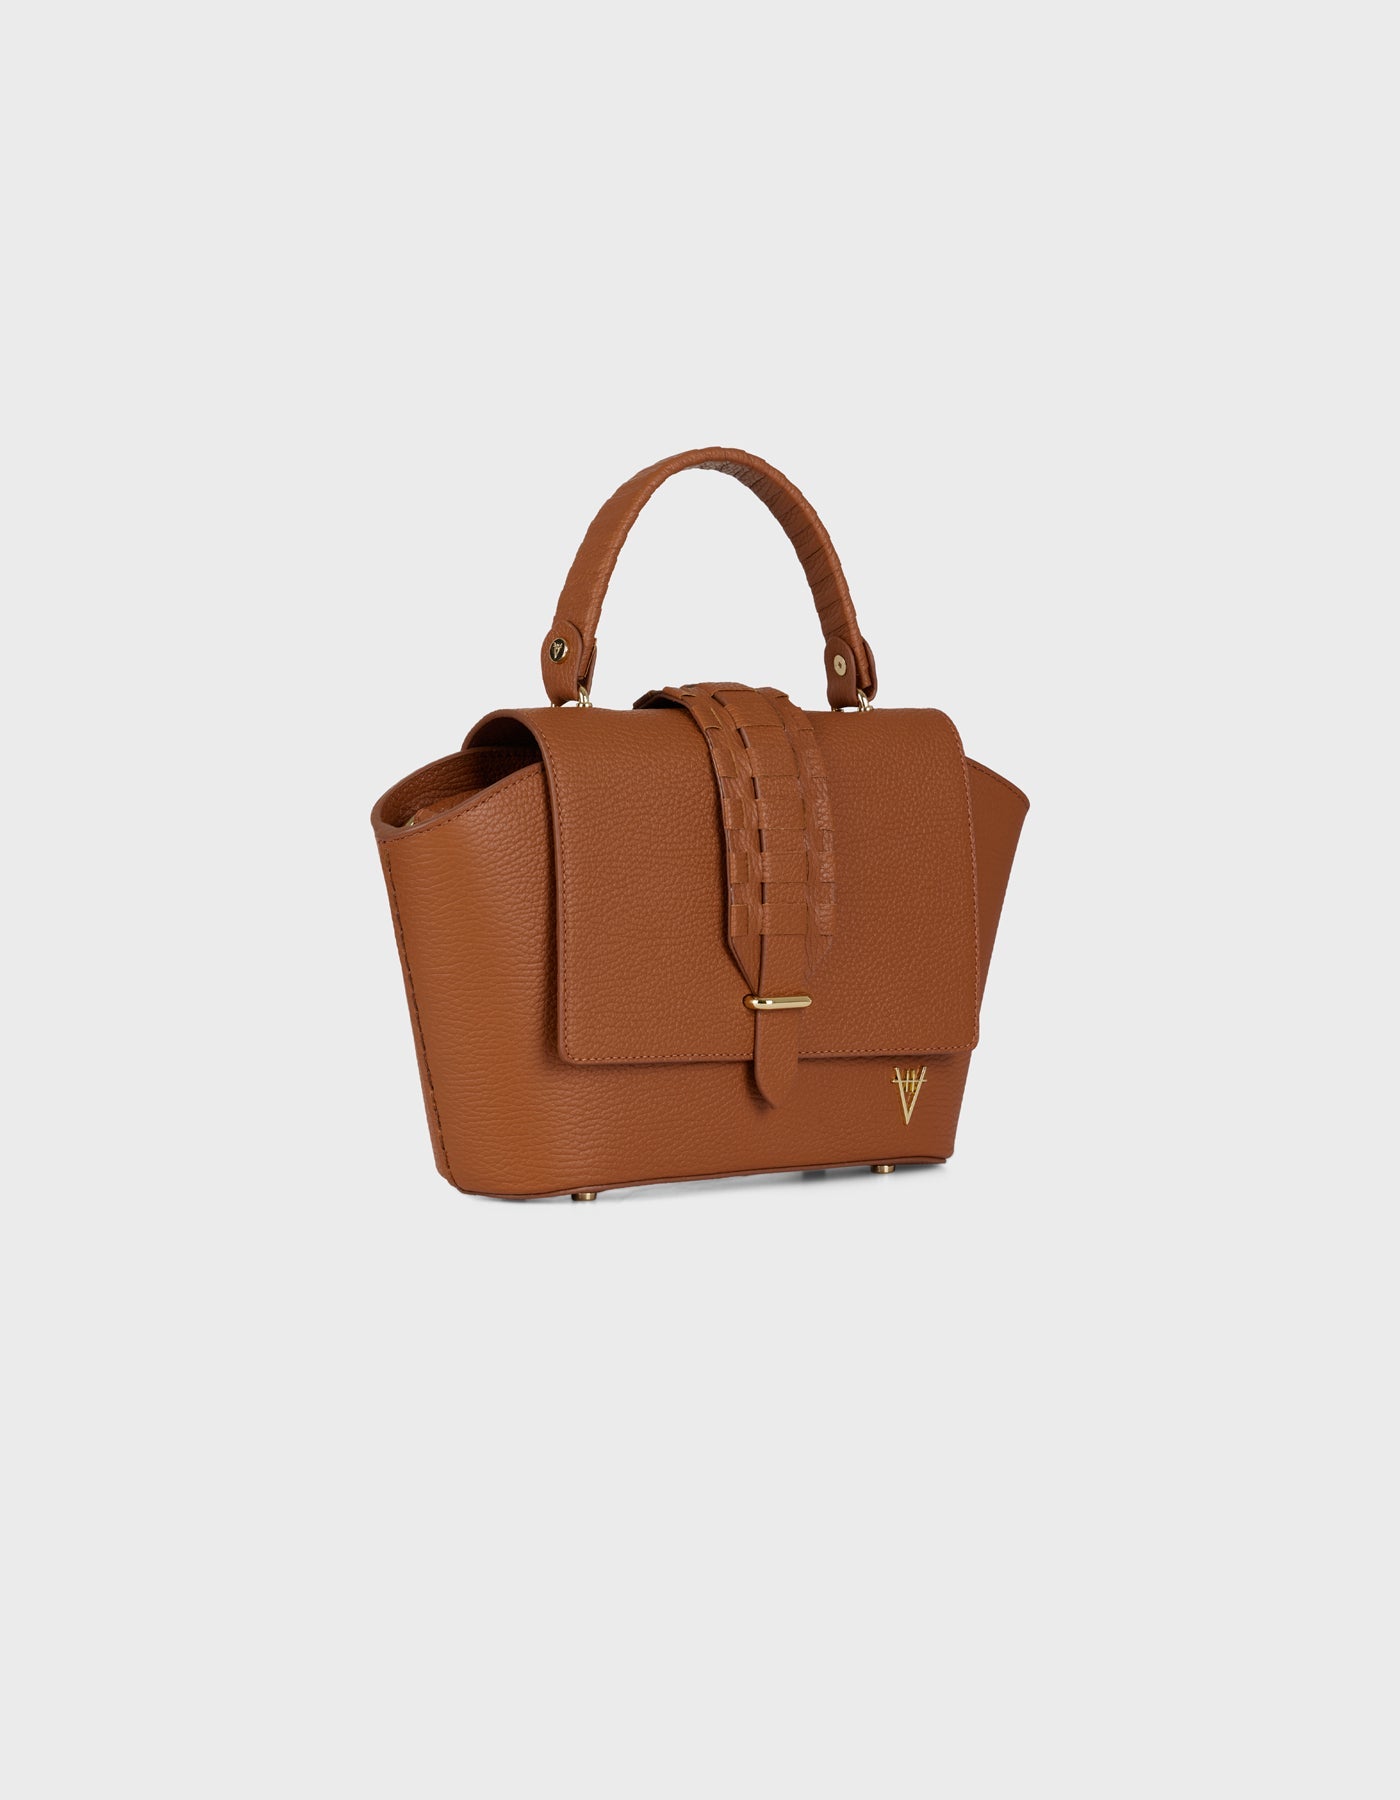 HiVa Atelier | Ventus Shoulder Bag Wood | Beautiful and Versatile